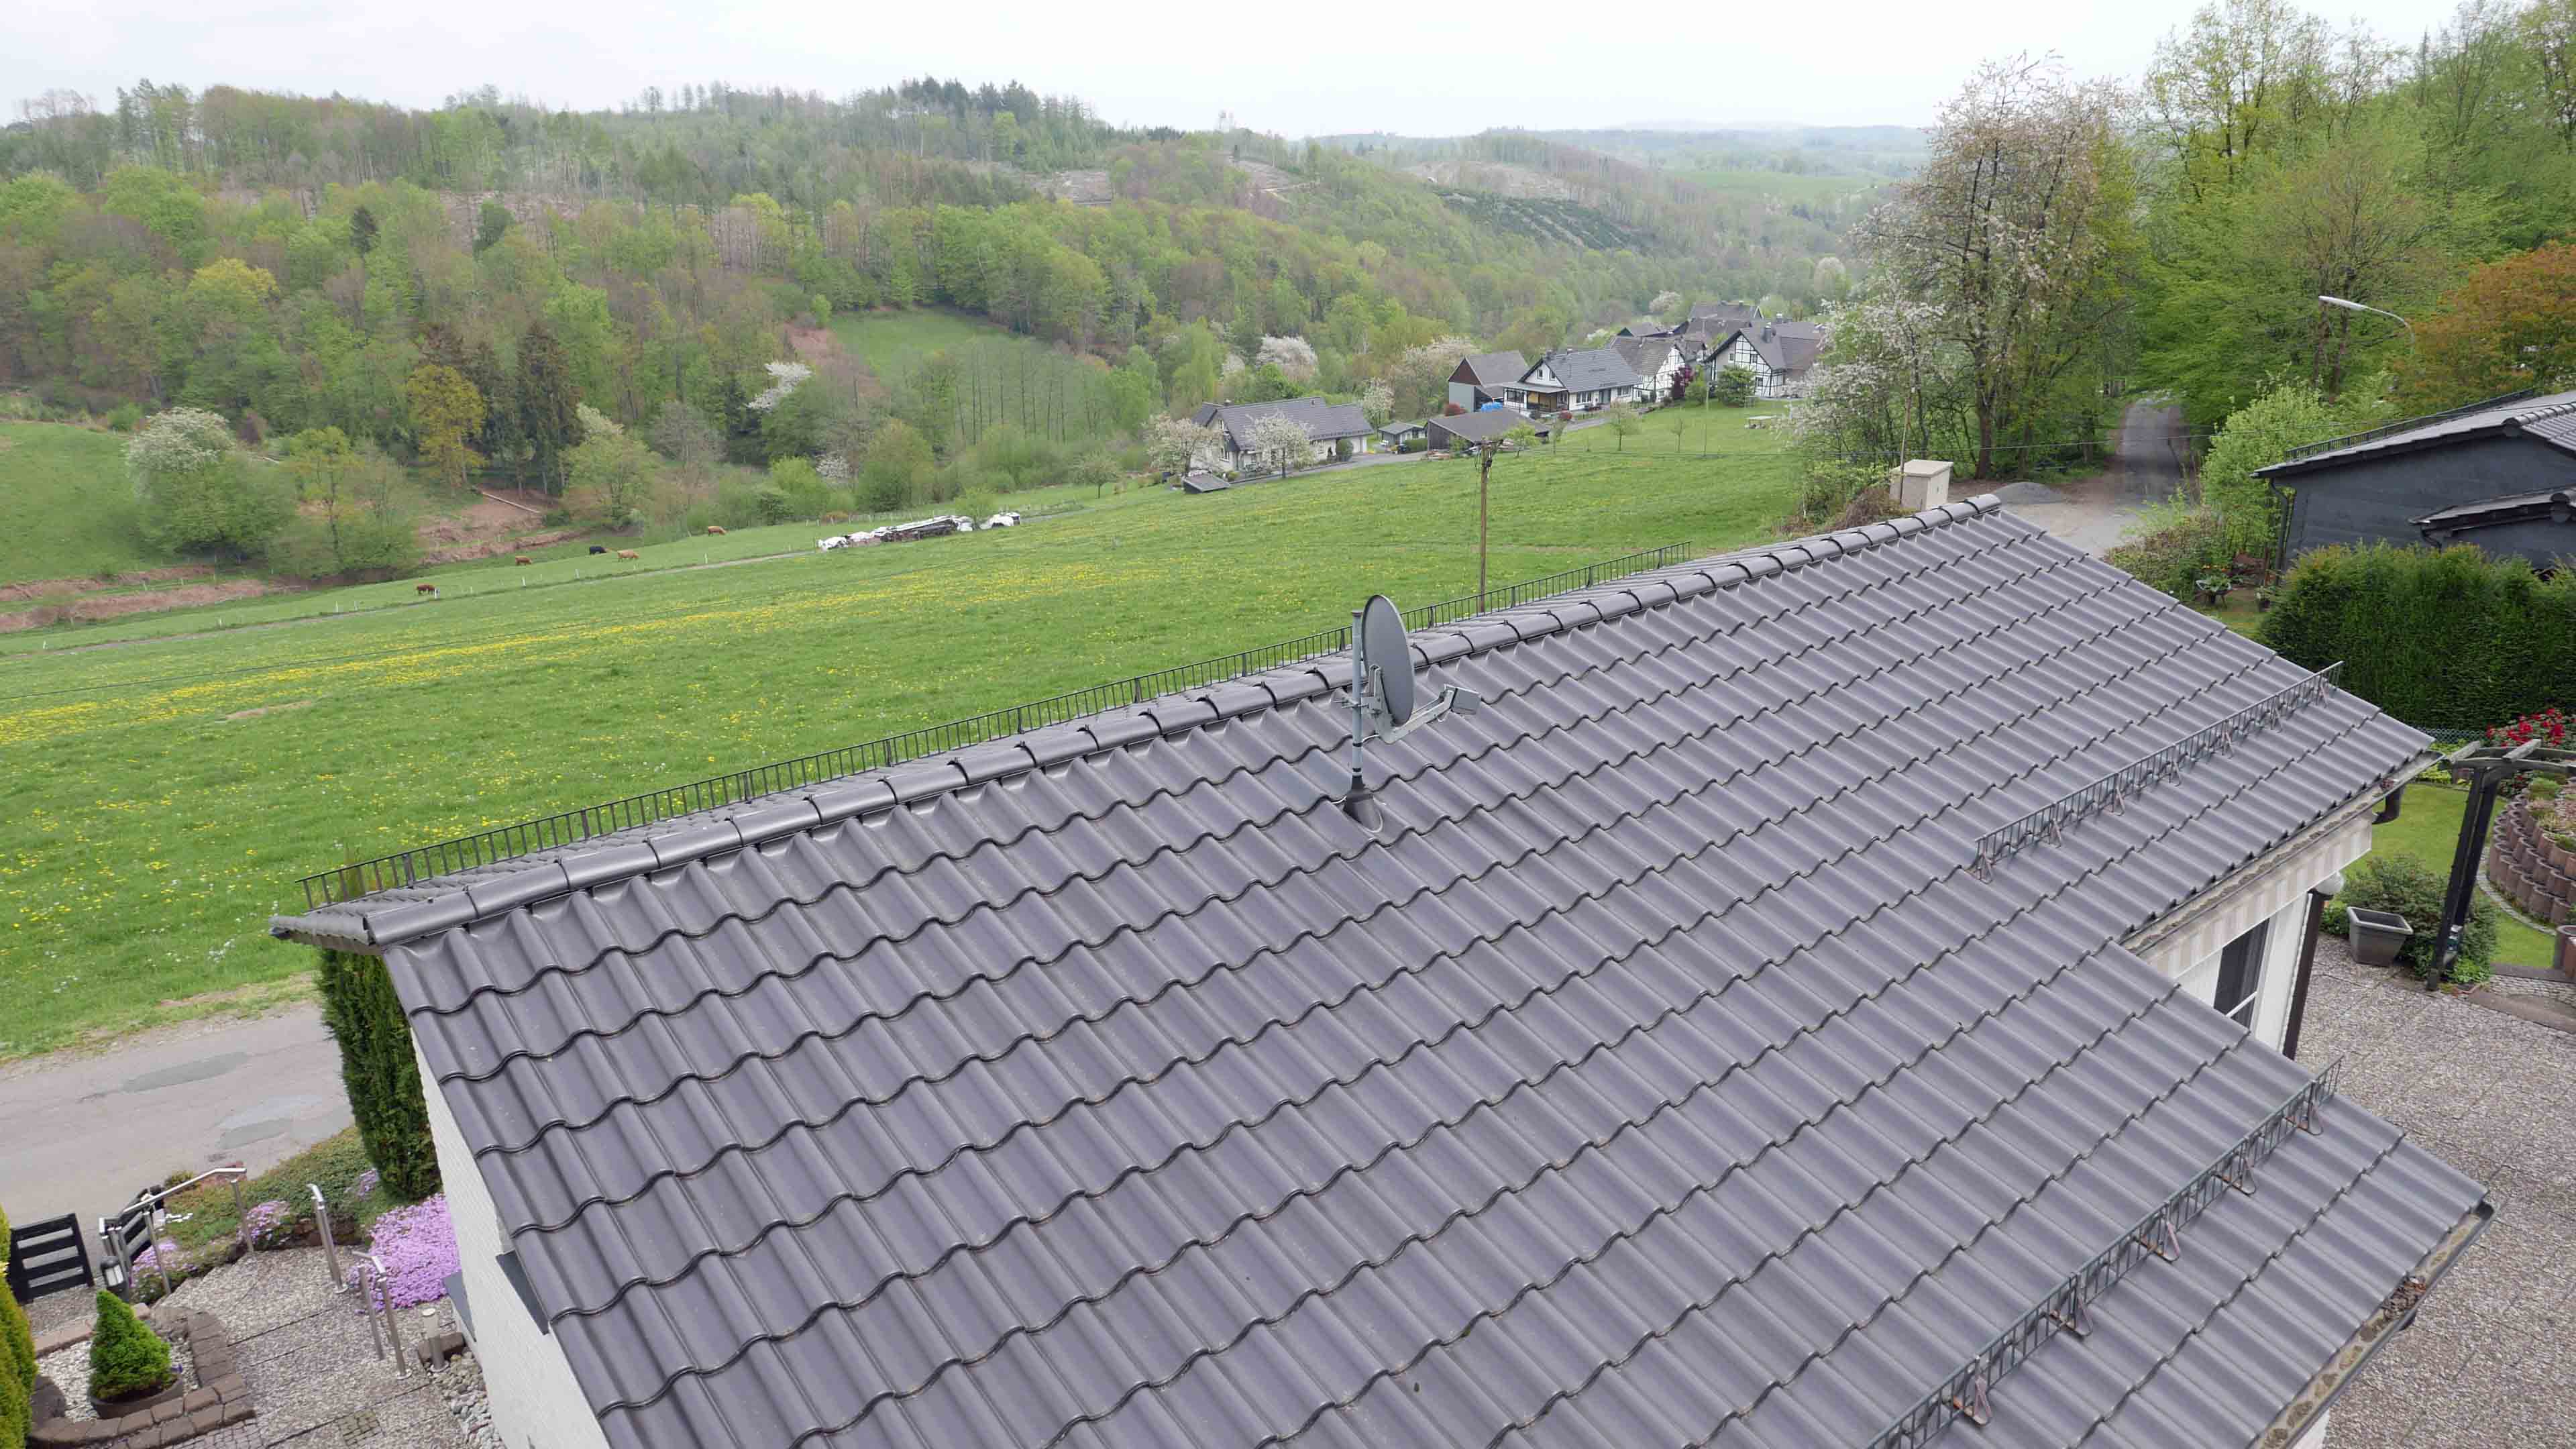 Morsbach-Böcklingen: Freier Blick ins Grüne - kleiner Bungalow in Höhenlage, Dach wurde 2015 erneuert. Einzigartige Wohnlage.